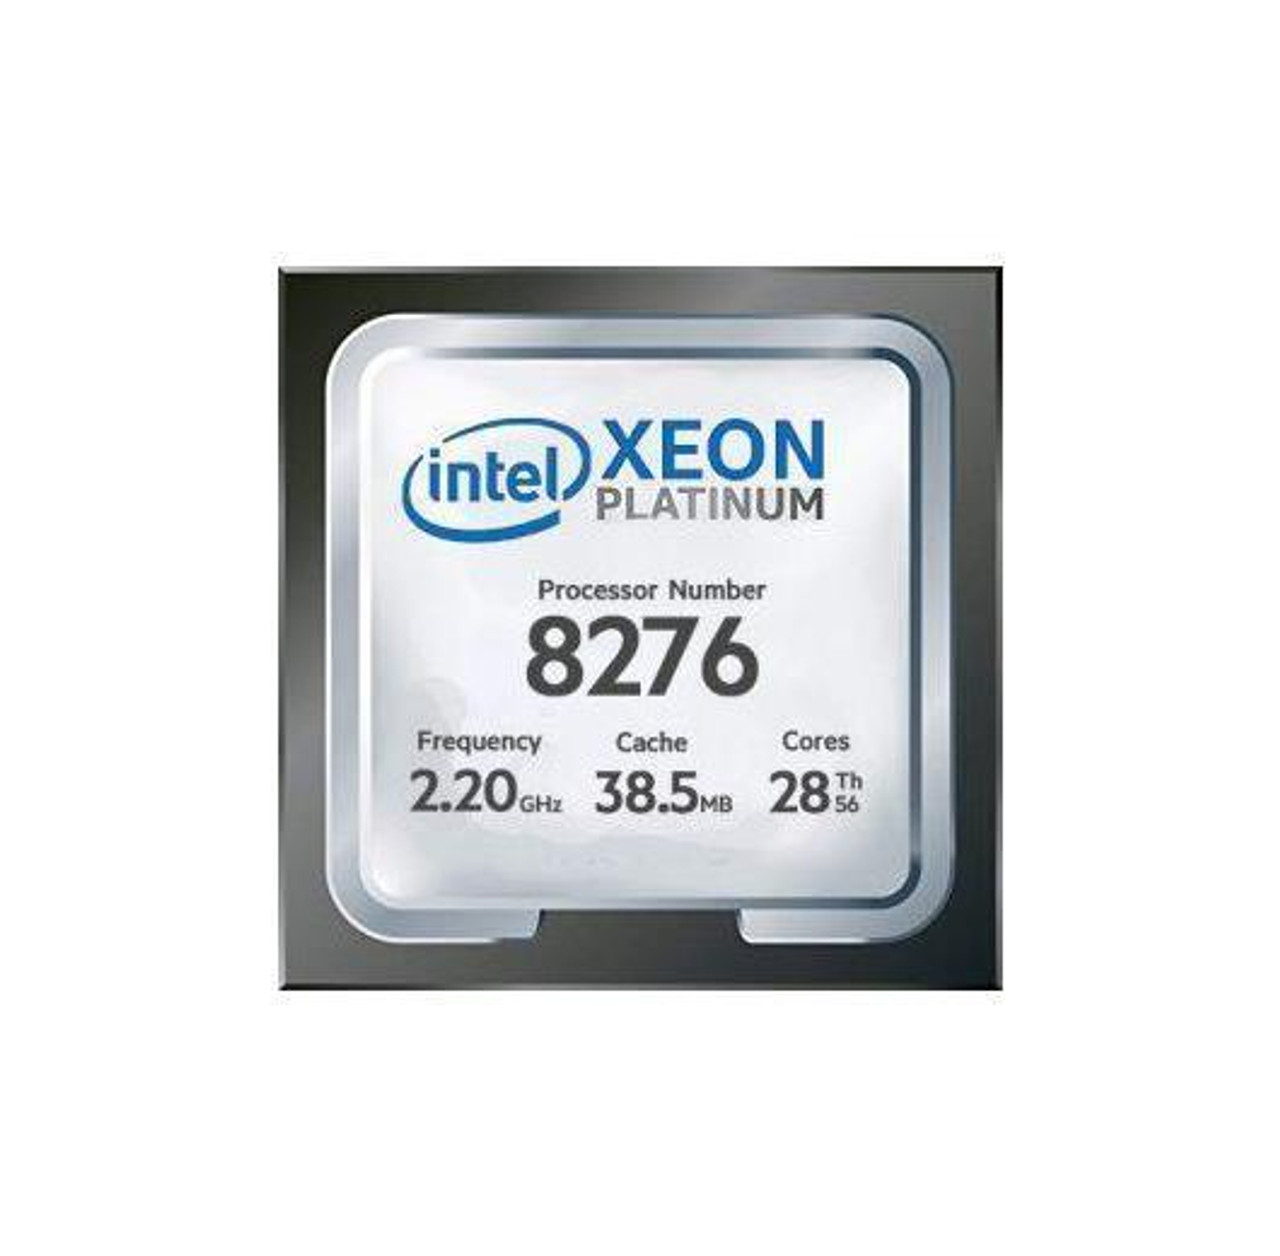 Dell CPU Kit Intel Xeon Platinum 28 Core Processor 8276 2.20GHz 38.5mb Cache Tdp 165w Fclga3647 For Dell Precision 7920 Tower